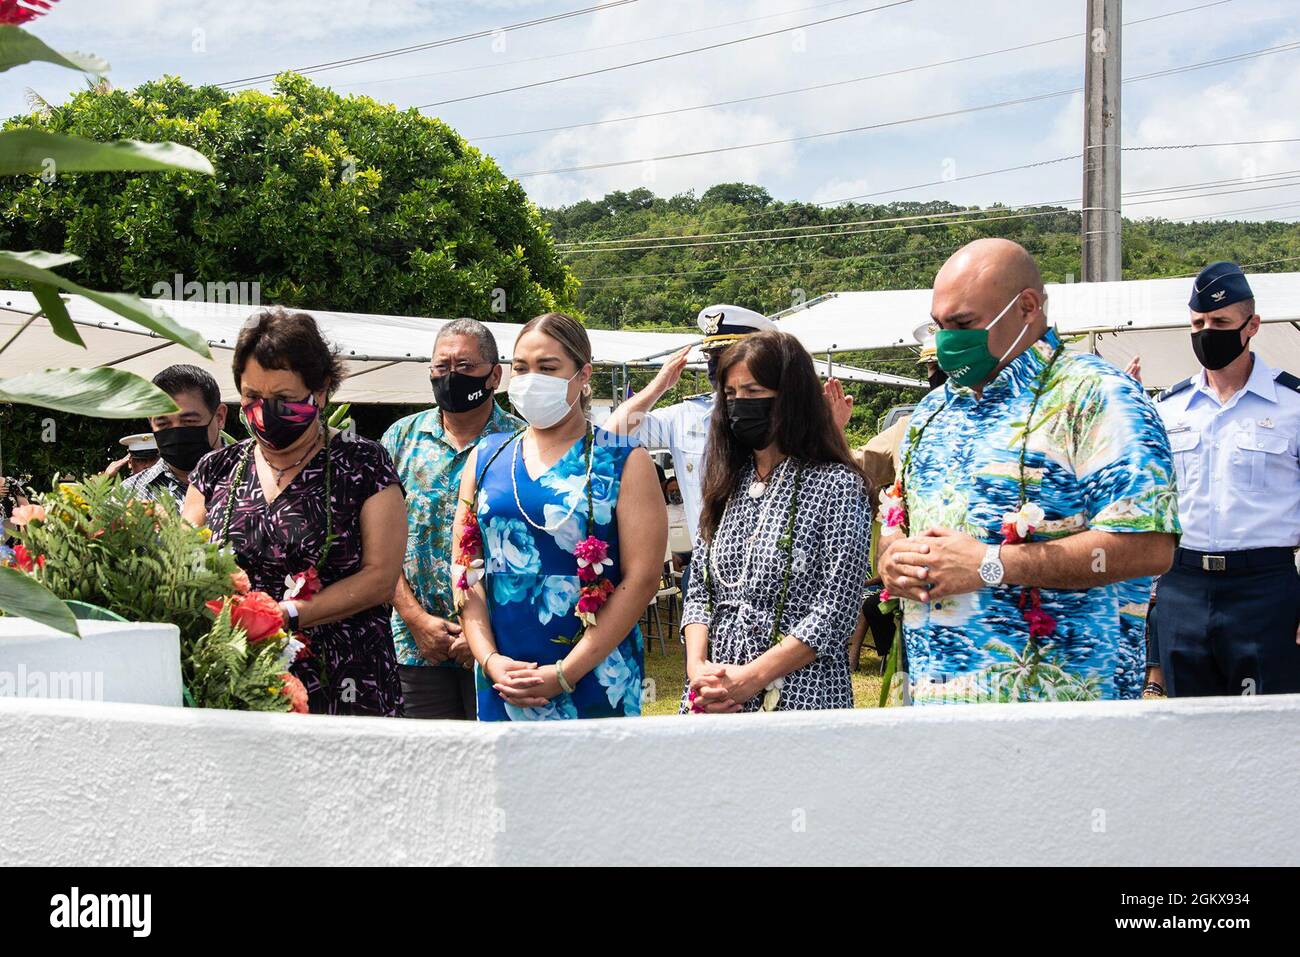 ASAN, Guam (19. Juli 2021) - während der Gedenkfeier für die Landung am Strand von Asan am 16. Juli erweisen Beamte des Militärs und der lokalen Regierung ihren Respekt. Mitglieder des Militärdienstes, lokale Regierungsbeamte und Bewohner versammelten sich, um an die Befreiung Guams durch das US-Militär während des Zweiten Weltkriegs zu erinnern Am Ort der Zeremonie pflanzte die 3. Marine Division die US-Flagge, nachdem sie den Strandkopf gesichert hatte. Etwa 55,000 Marine- und Armeesoldaten nahmen an der Schlacht um Guam Teil. Mehr als 1,800 amerikanische Dienstmitglieder wurden in den ersten 21 Tagen von comba im Einsatz getötet oder starben an Wunden Stockfoto